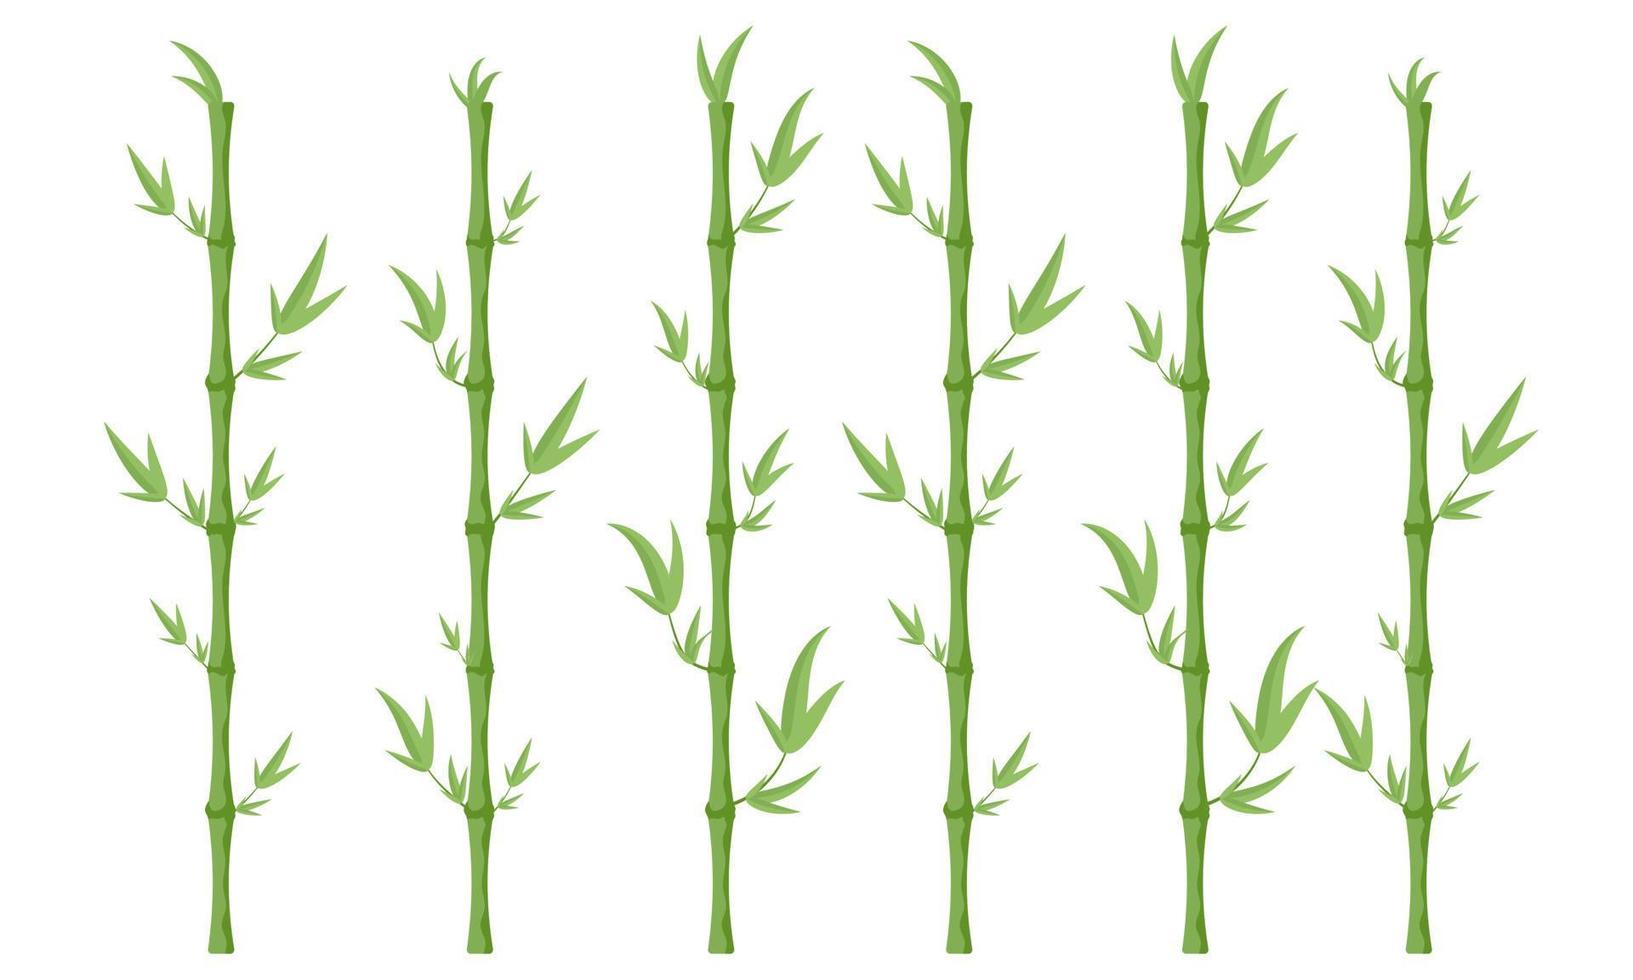 impostato di bambù steli. vettore illustrazione.